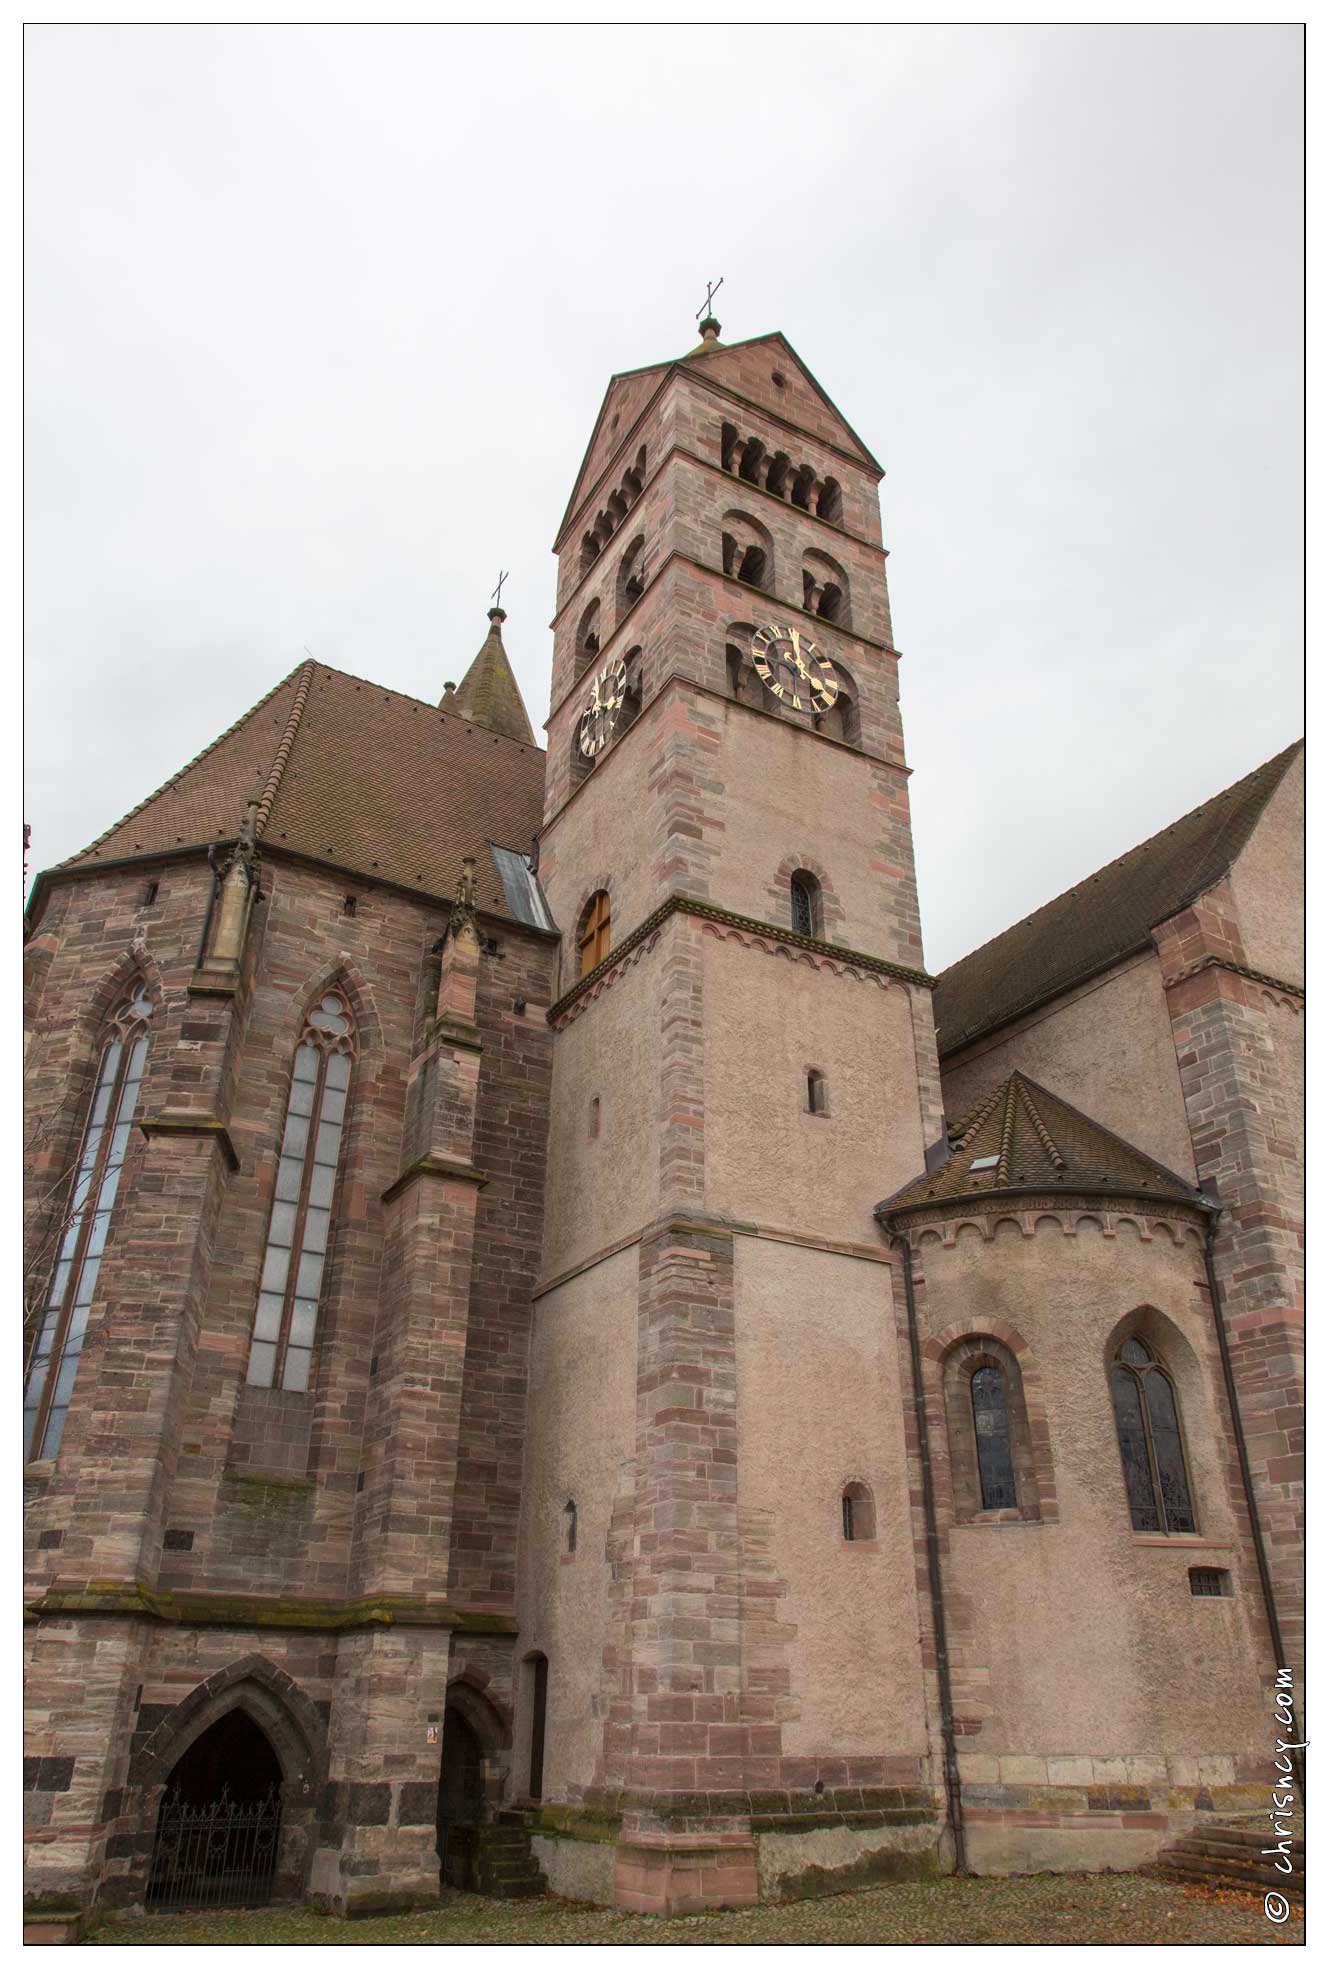 20161106-148_5574-Breisach_am_Rhein_Cathedrale_Saint_Etienne.jpg